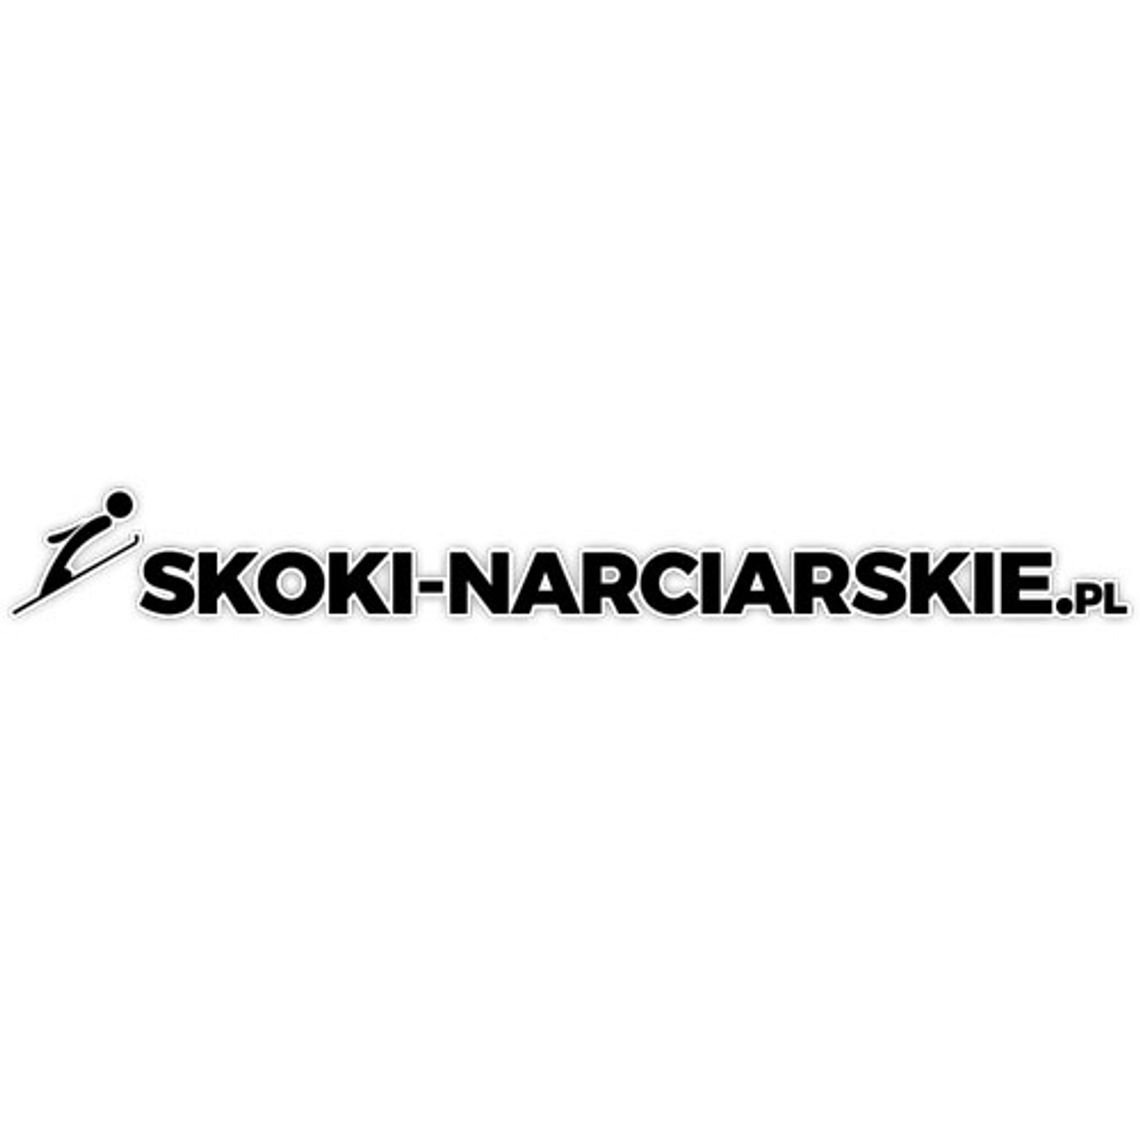 Skoki narciarskie dzisiaj - Skoki-narciarskie.pl